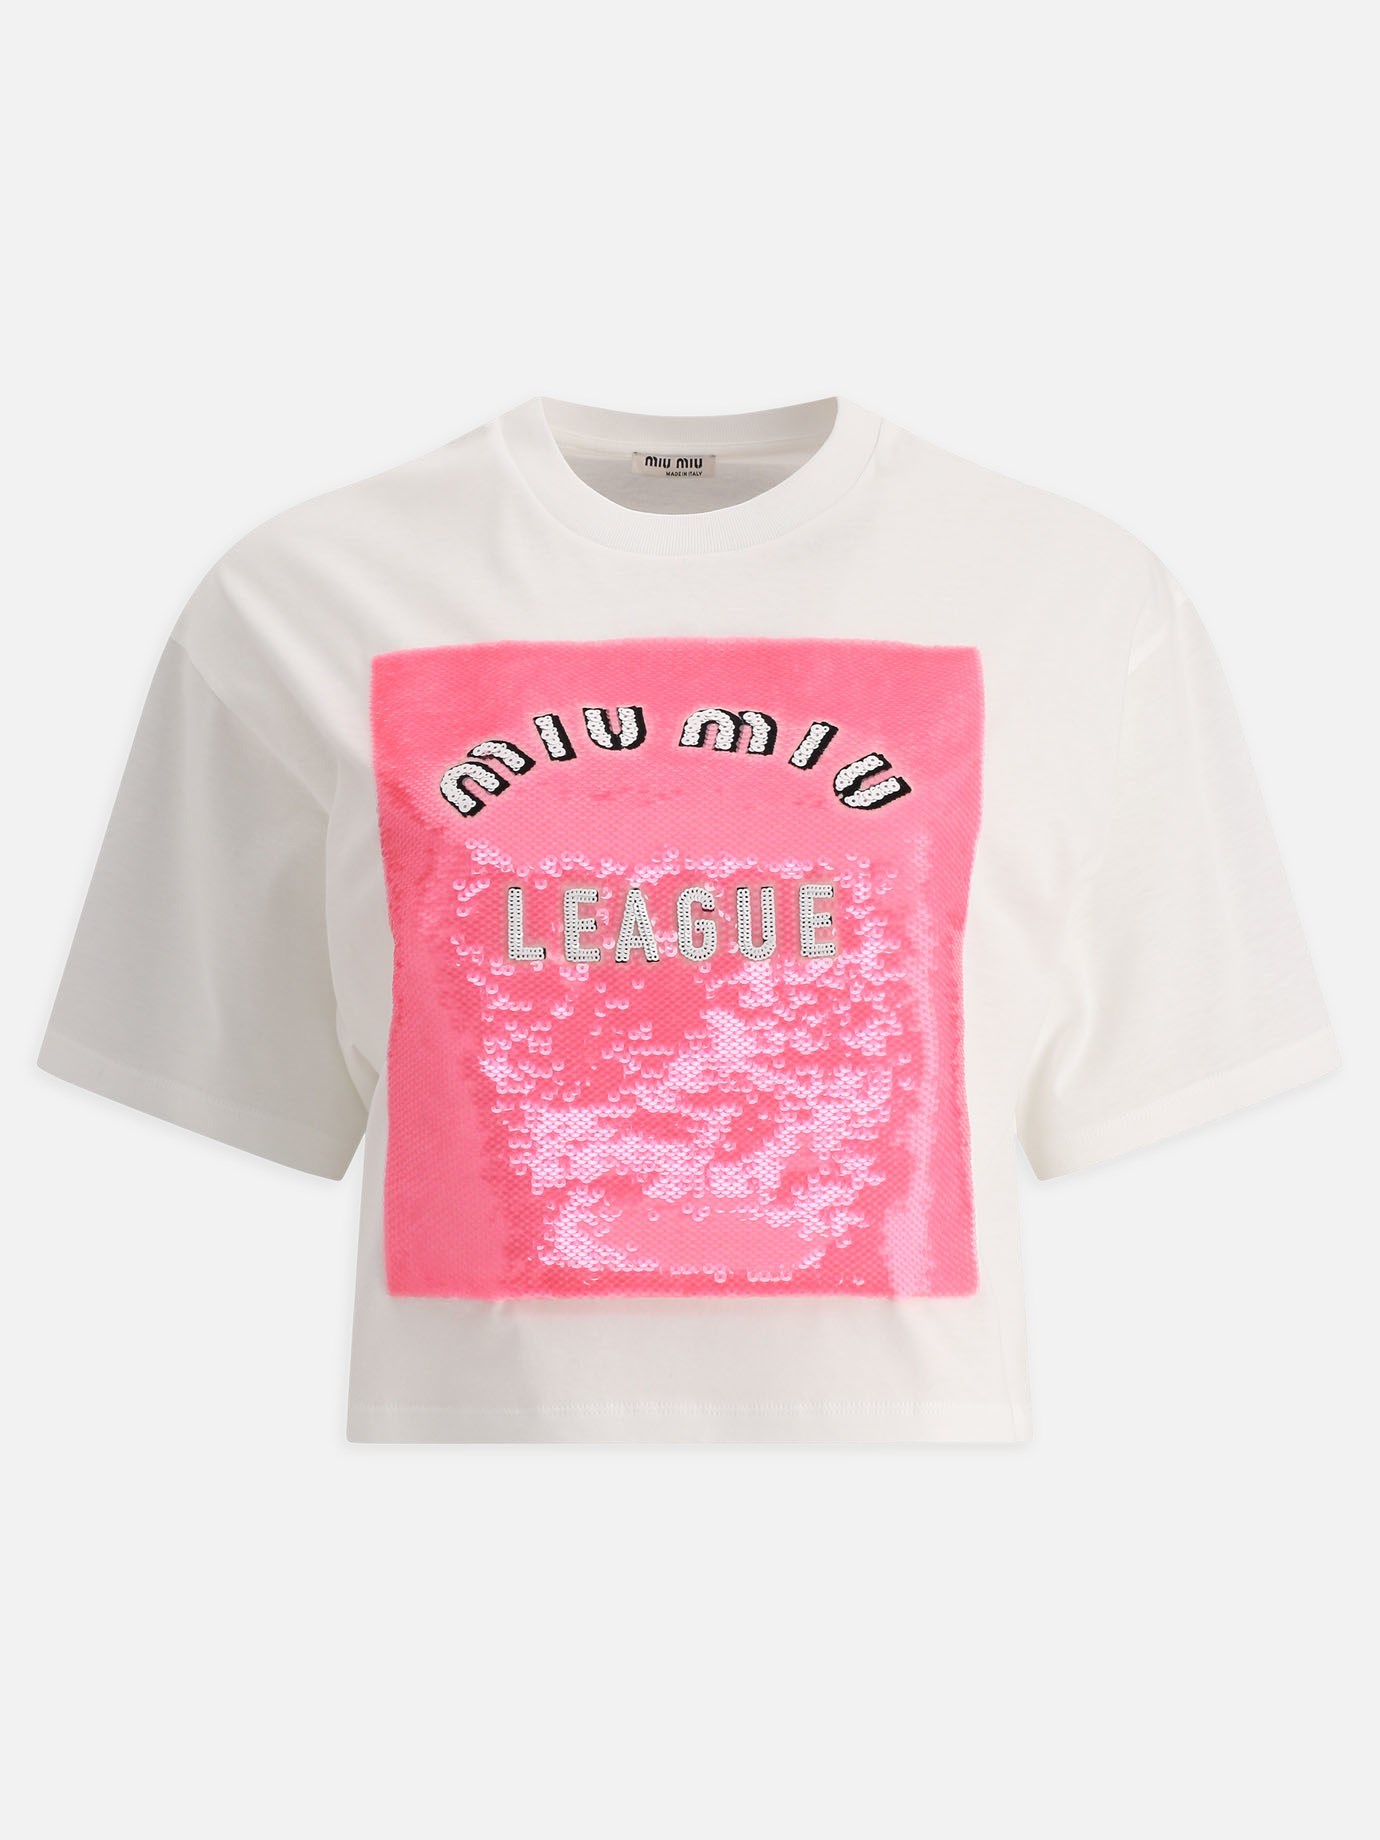 T-shirt con paillette  League  by Miu Miu